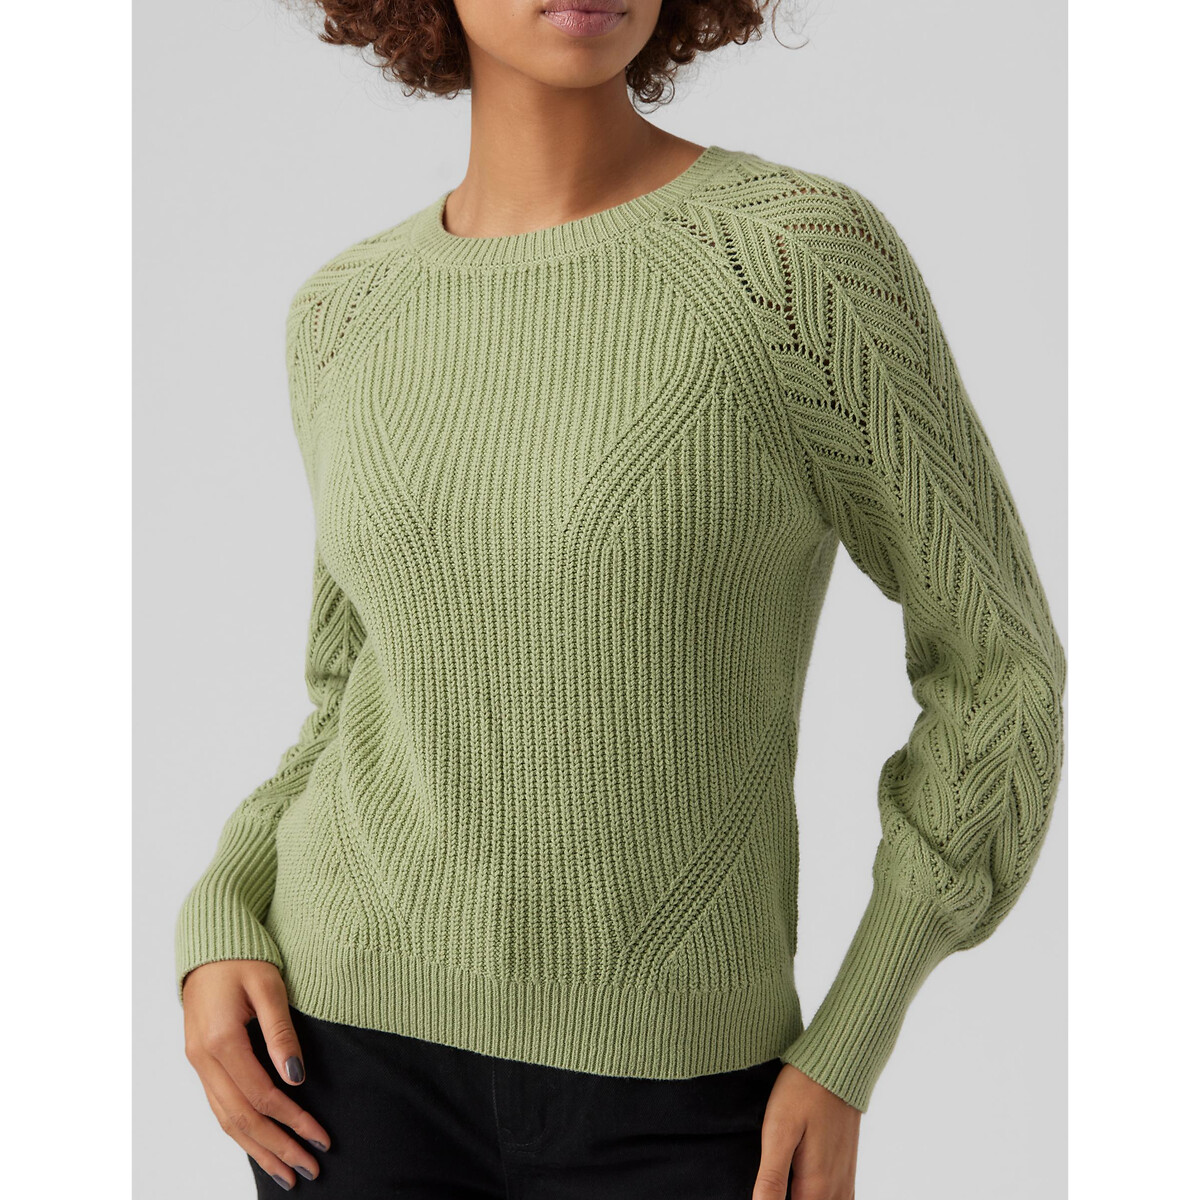 Пуловер С круглым вырезом рукава из ажурного трикотажа L зеленый